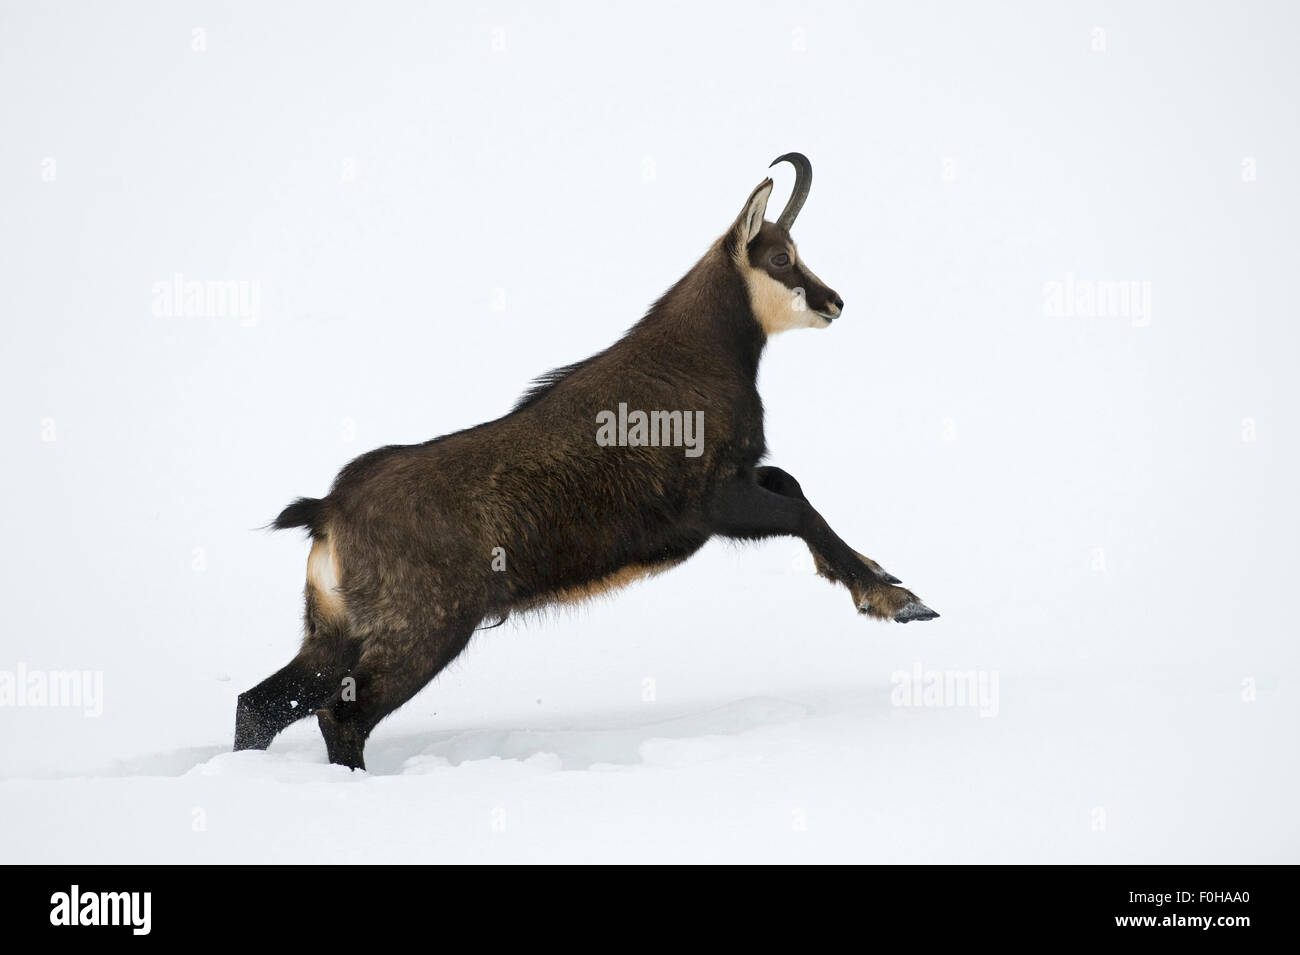 Il camoscio (Rupicapra rupicapra) in esecuzione attraverso la neve, il Parco Nazionale del Gran Paradiso, l'Italia, novembre 2008 Foto Stock